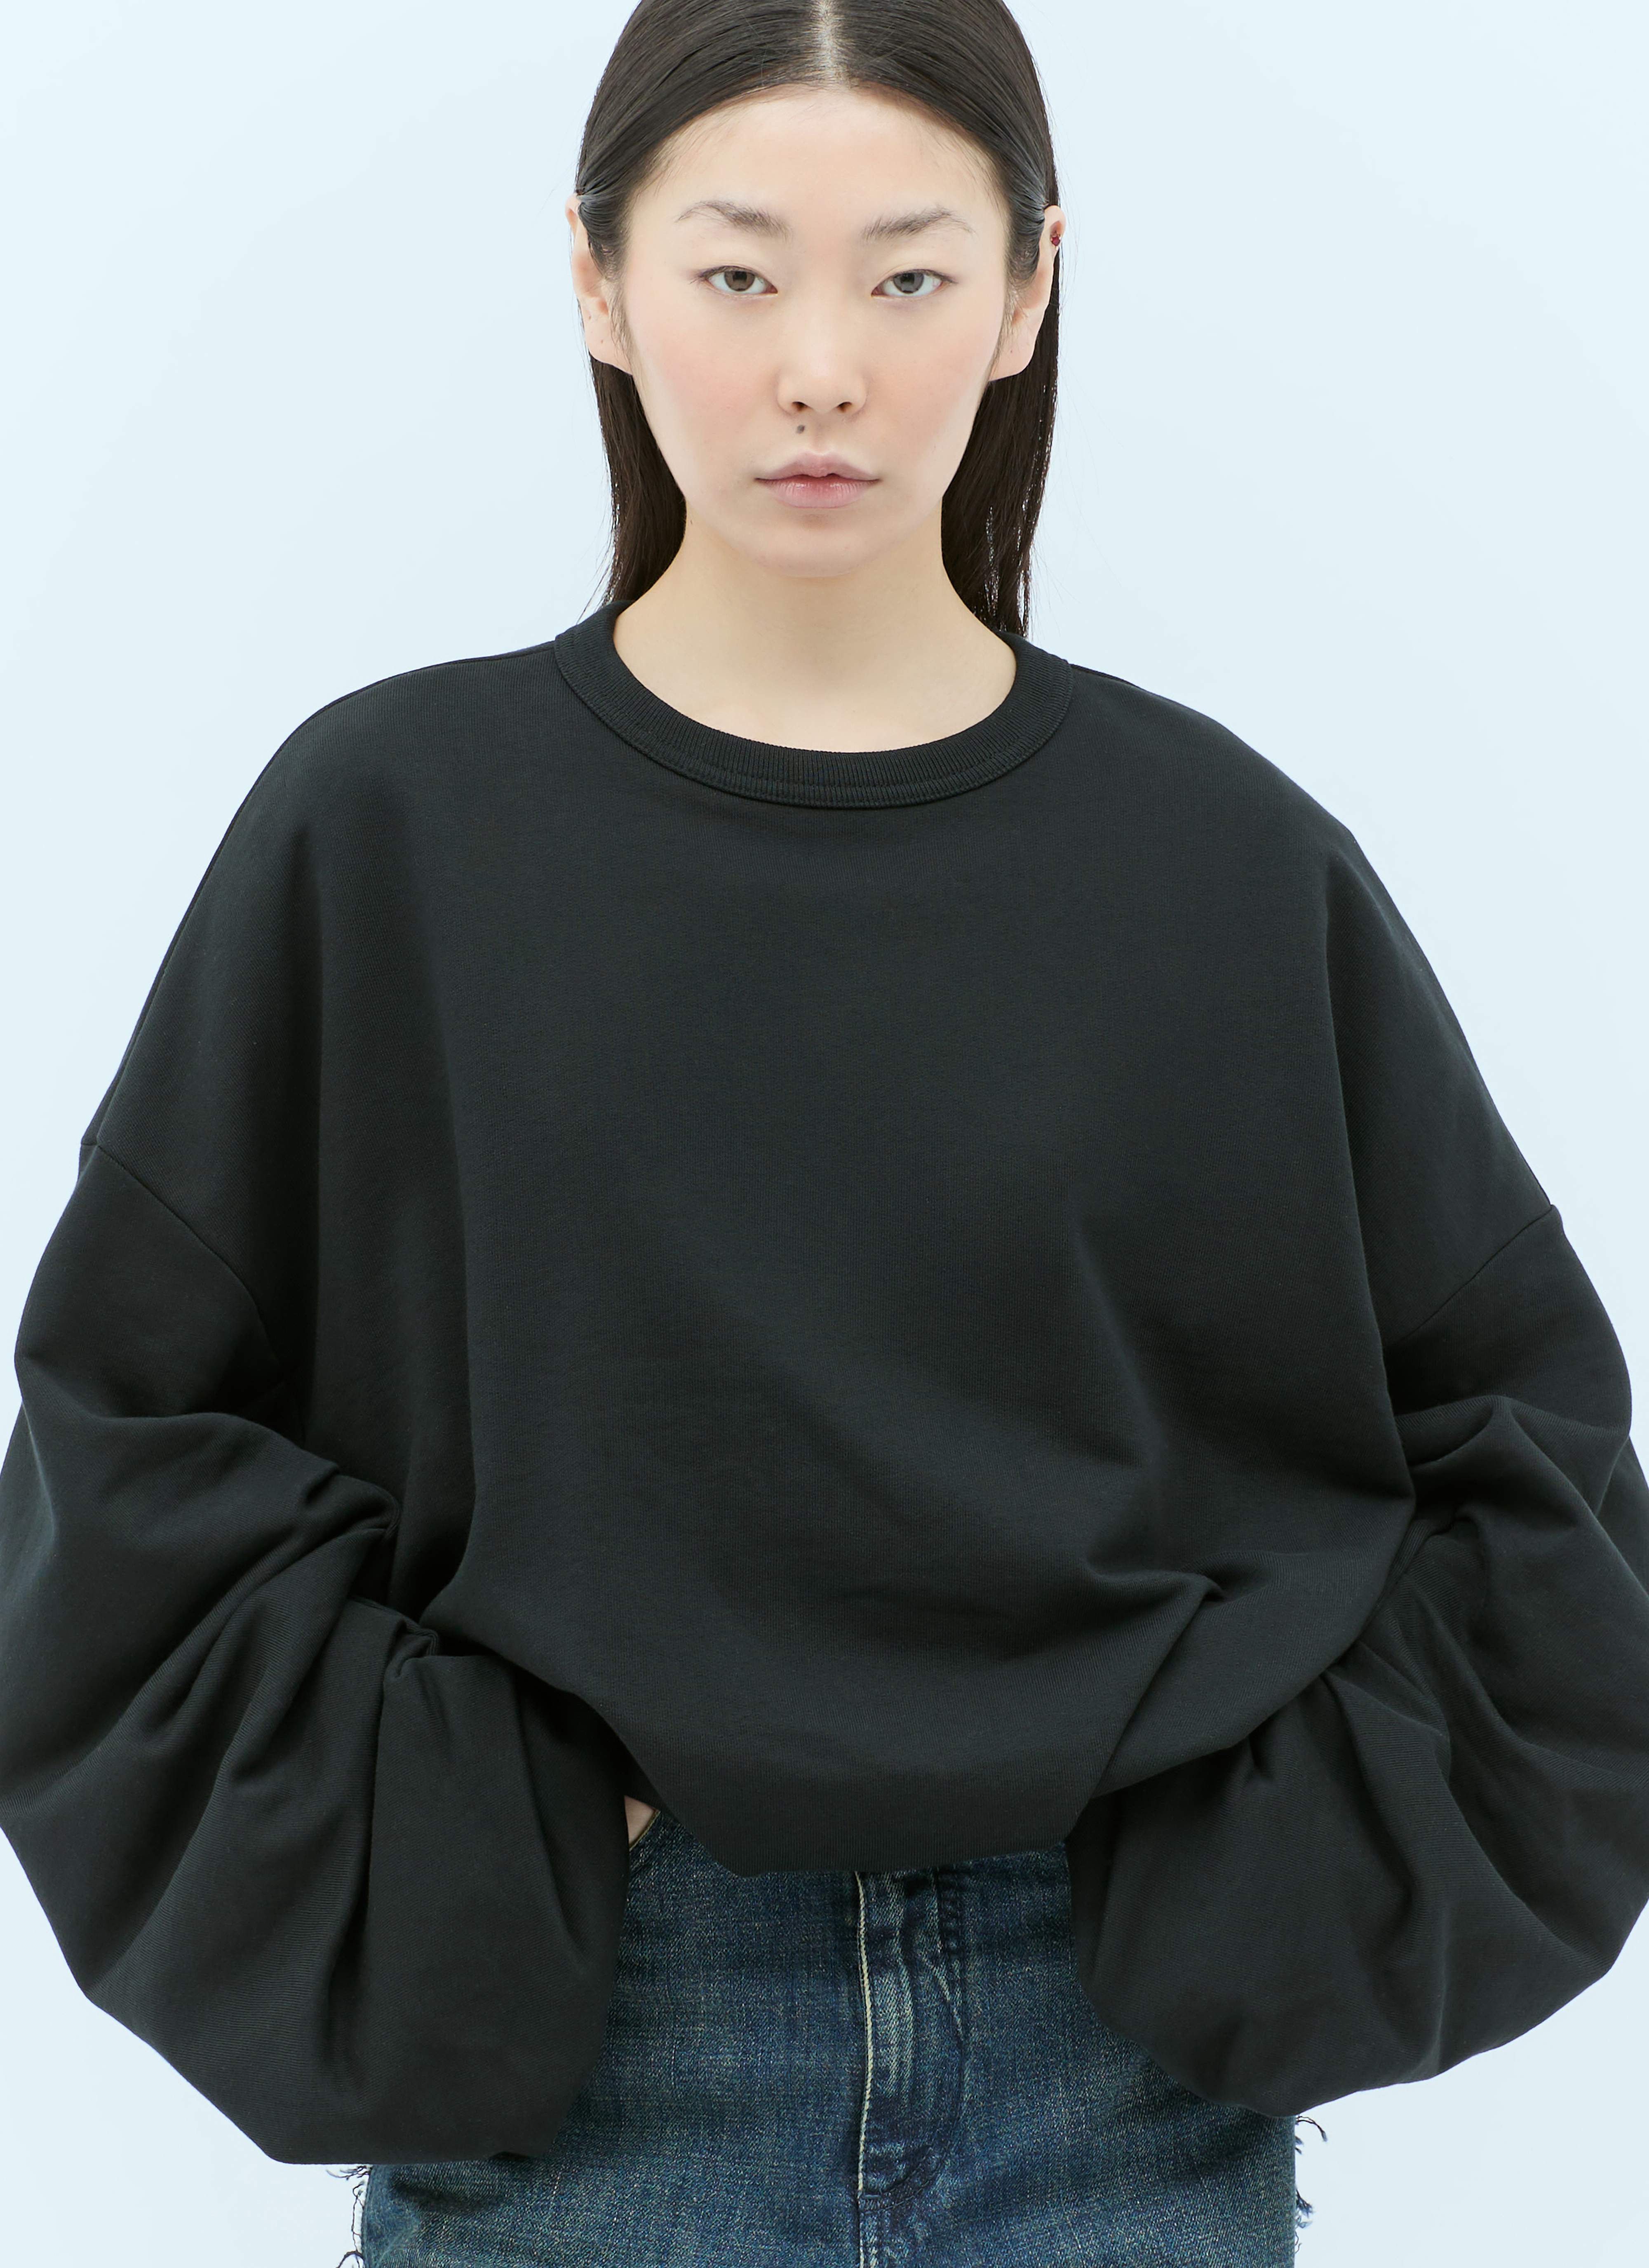 Dries Van Noten Hannett Sweatshirt in Black | LN-CC®